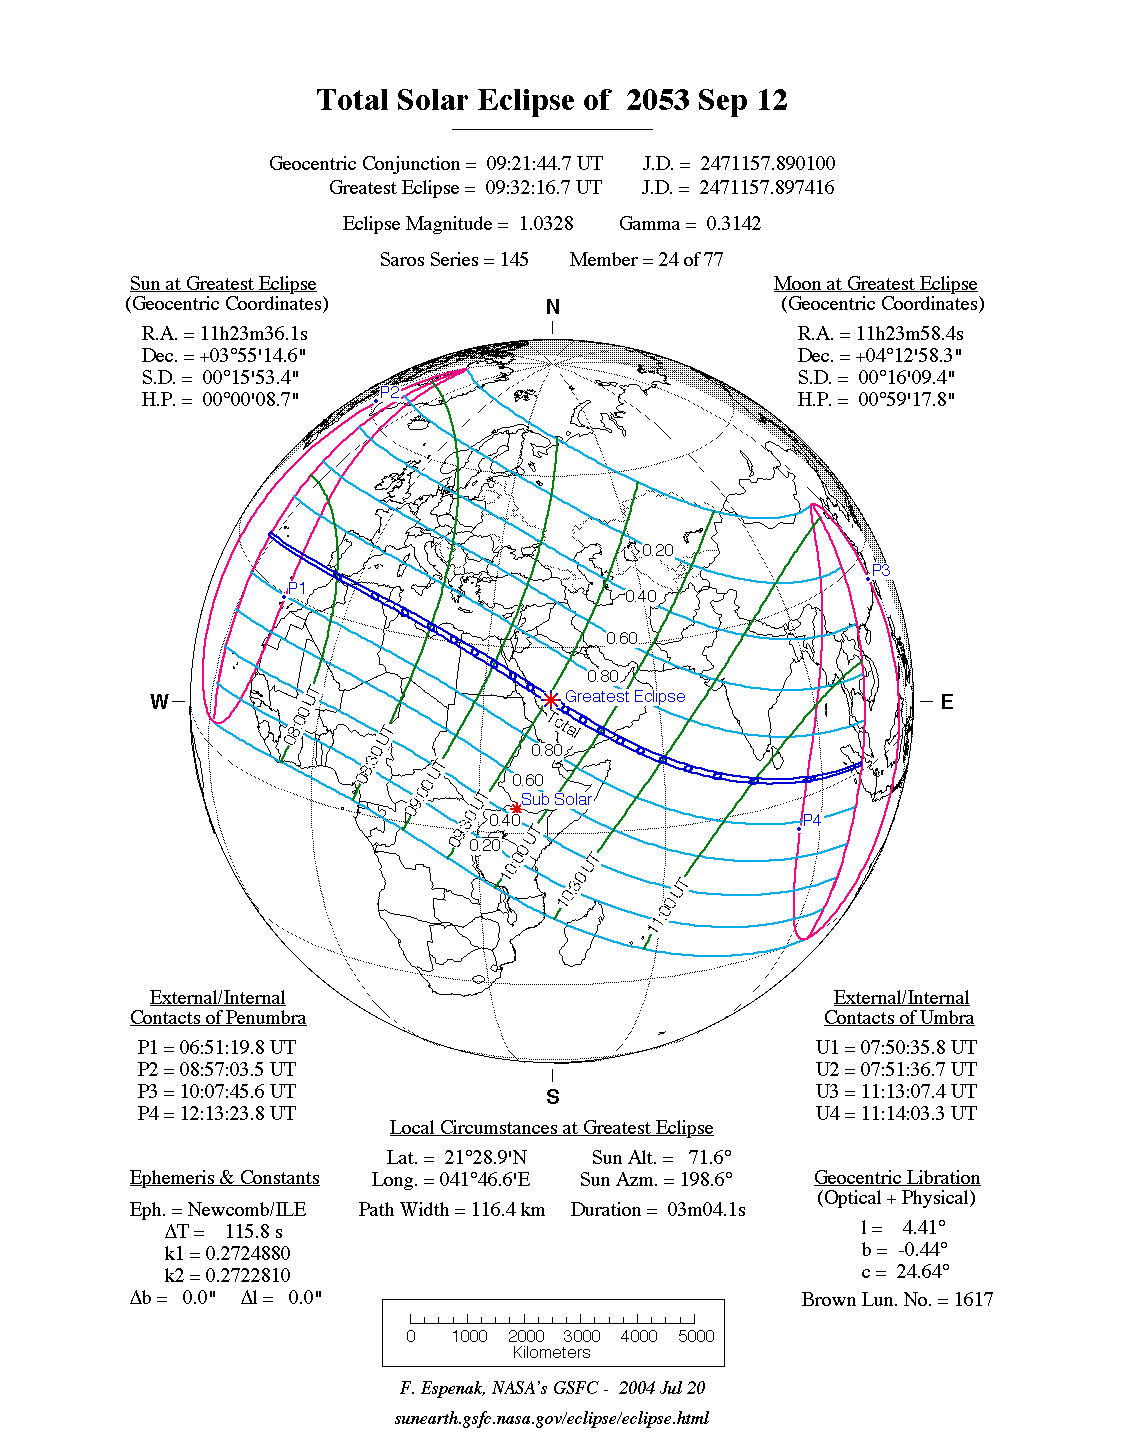 Verlauf der Totalen Sonnenfinsternis am 12.09.2053